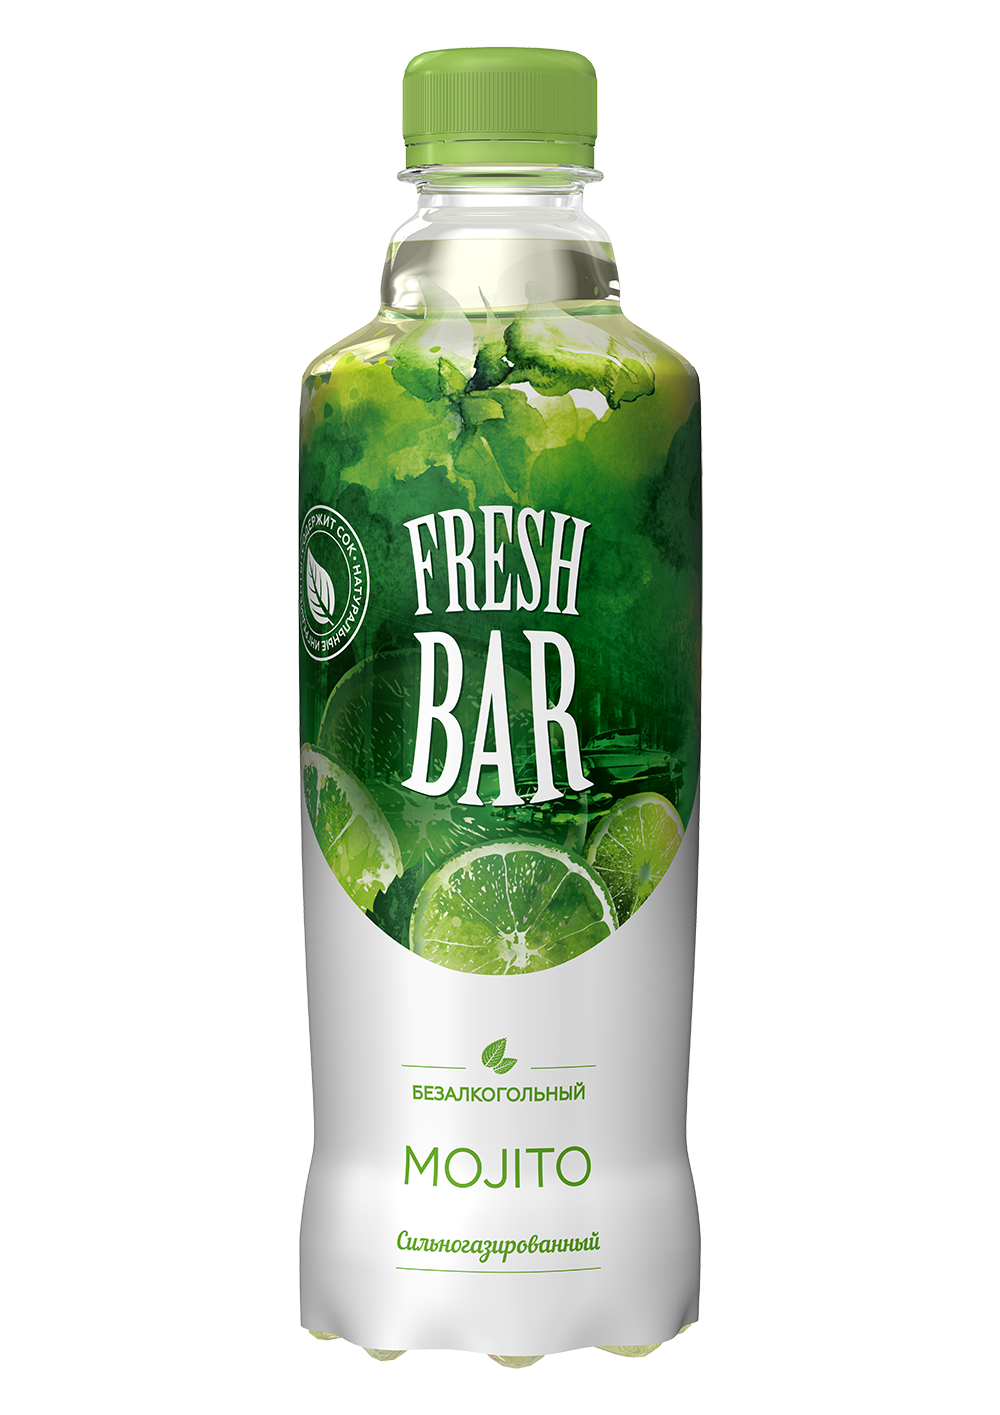 Мохито адреса. Fresh Bar напиток 1.5 л. Напиток Fresh Bar Mojito. Фреш бар Мохито 0.48. Фреш бар напиток Мохито.